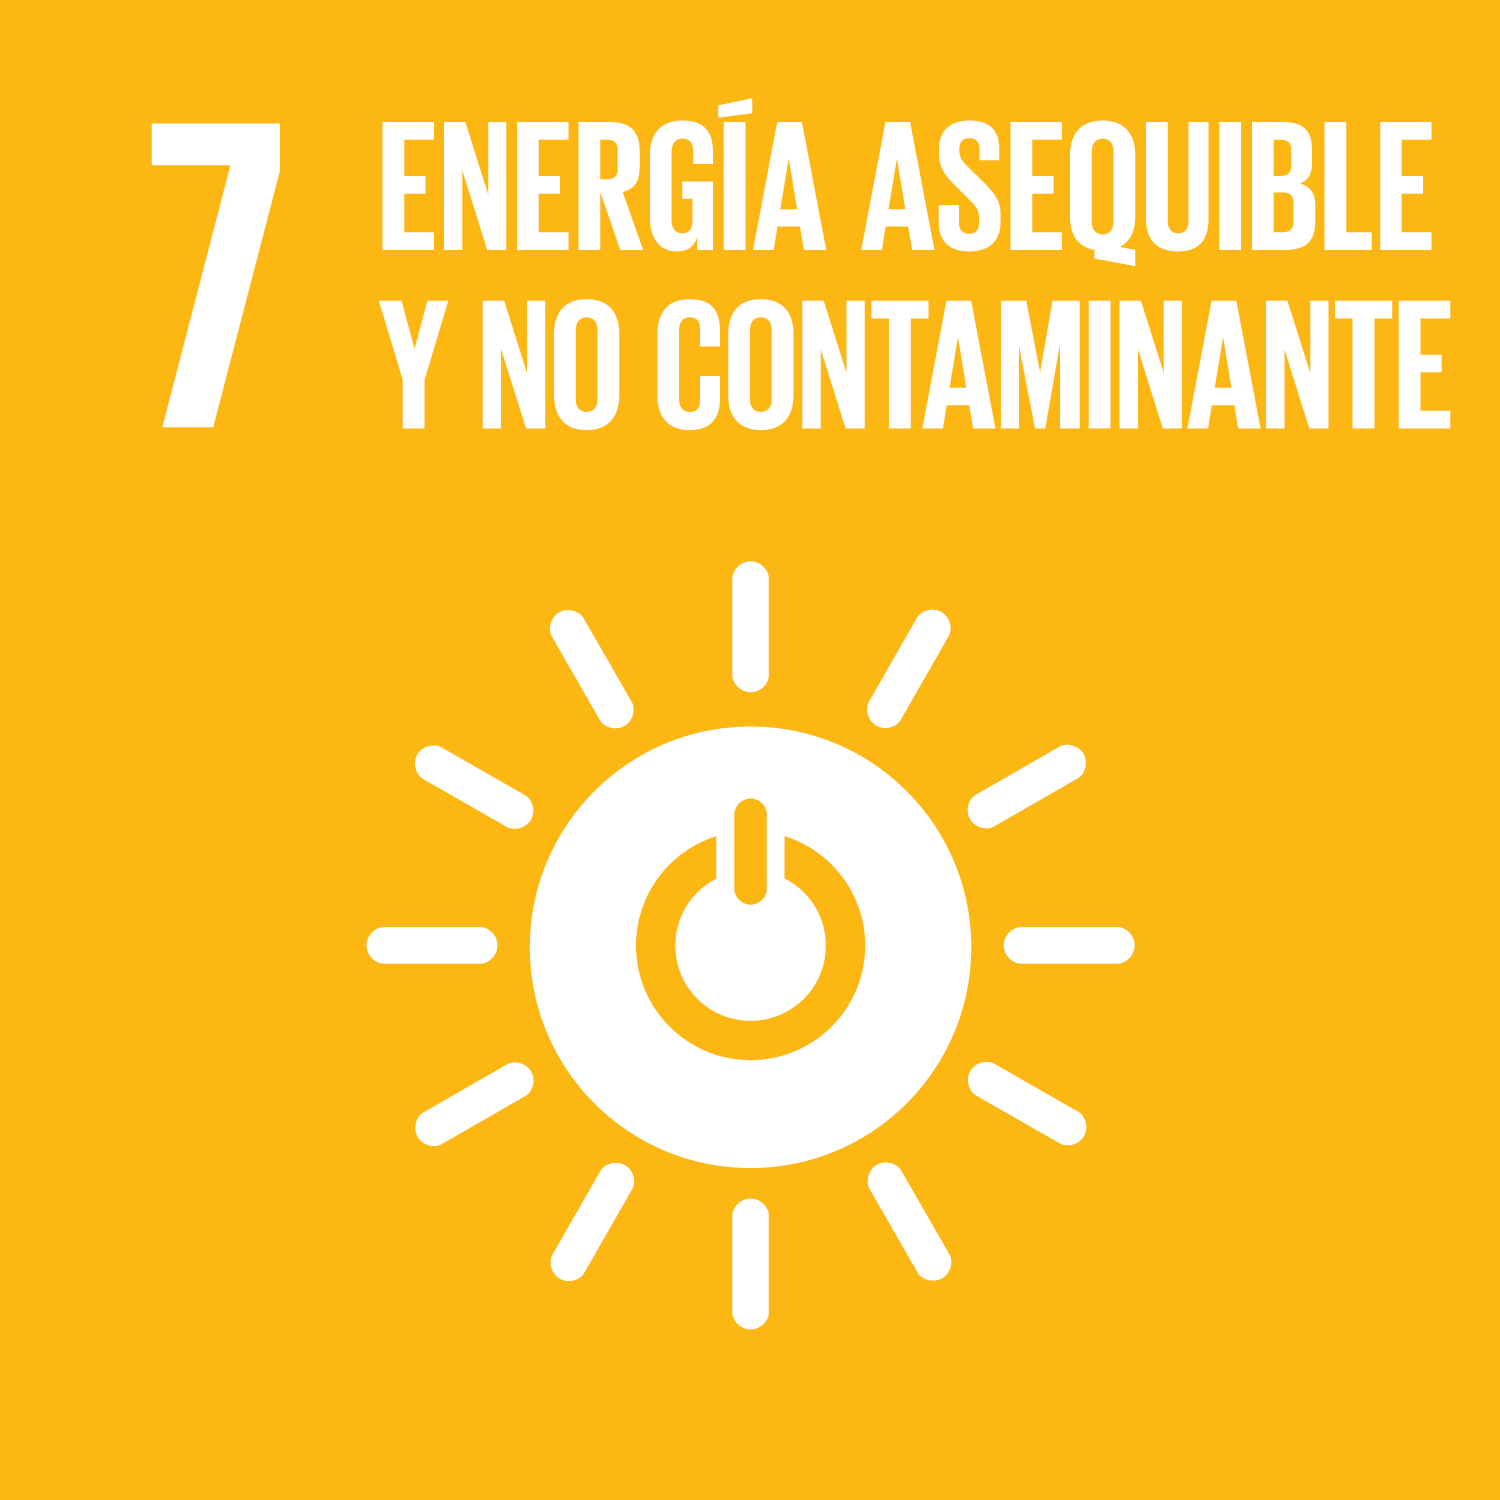 Los Objetivos de Desarrollo Sostenible - Garantizar el acceso a energía asequible, segura, sostenible y moderna para todos.